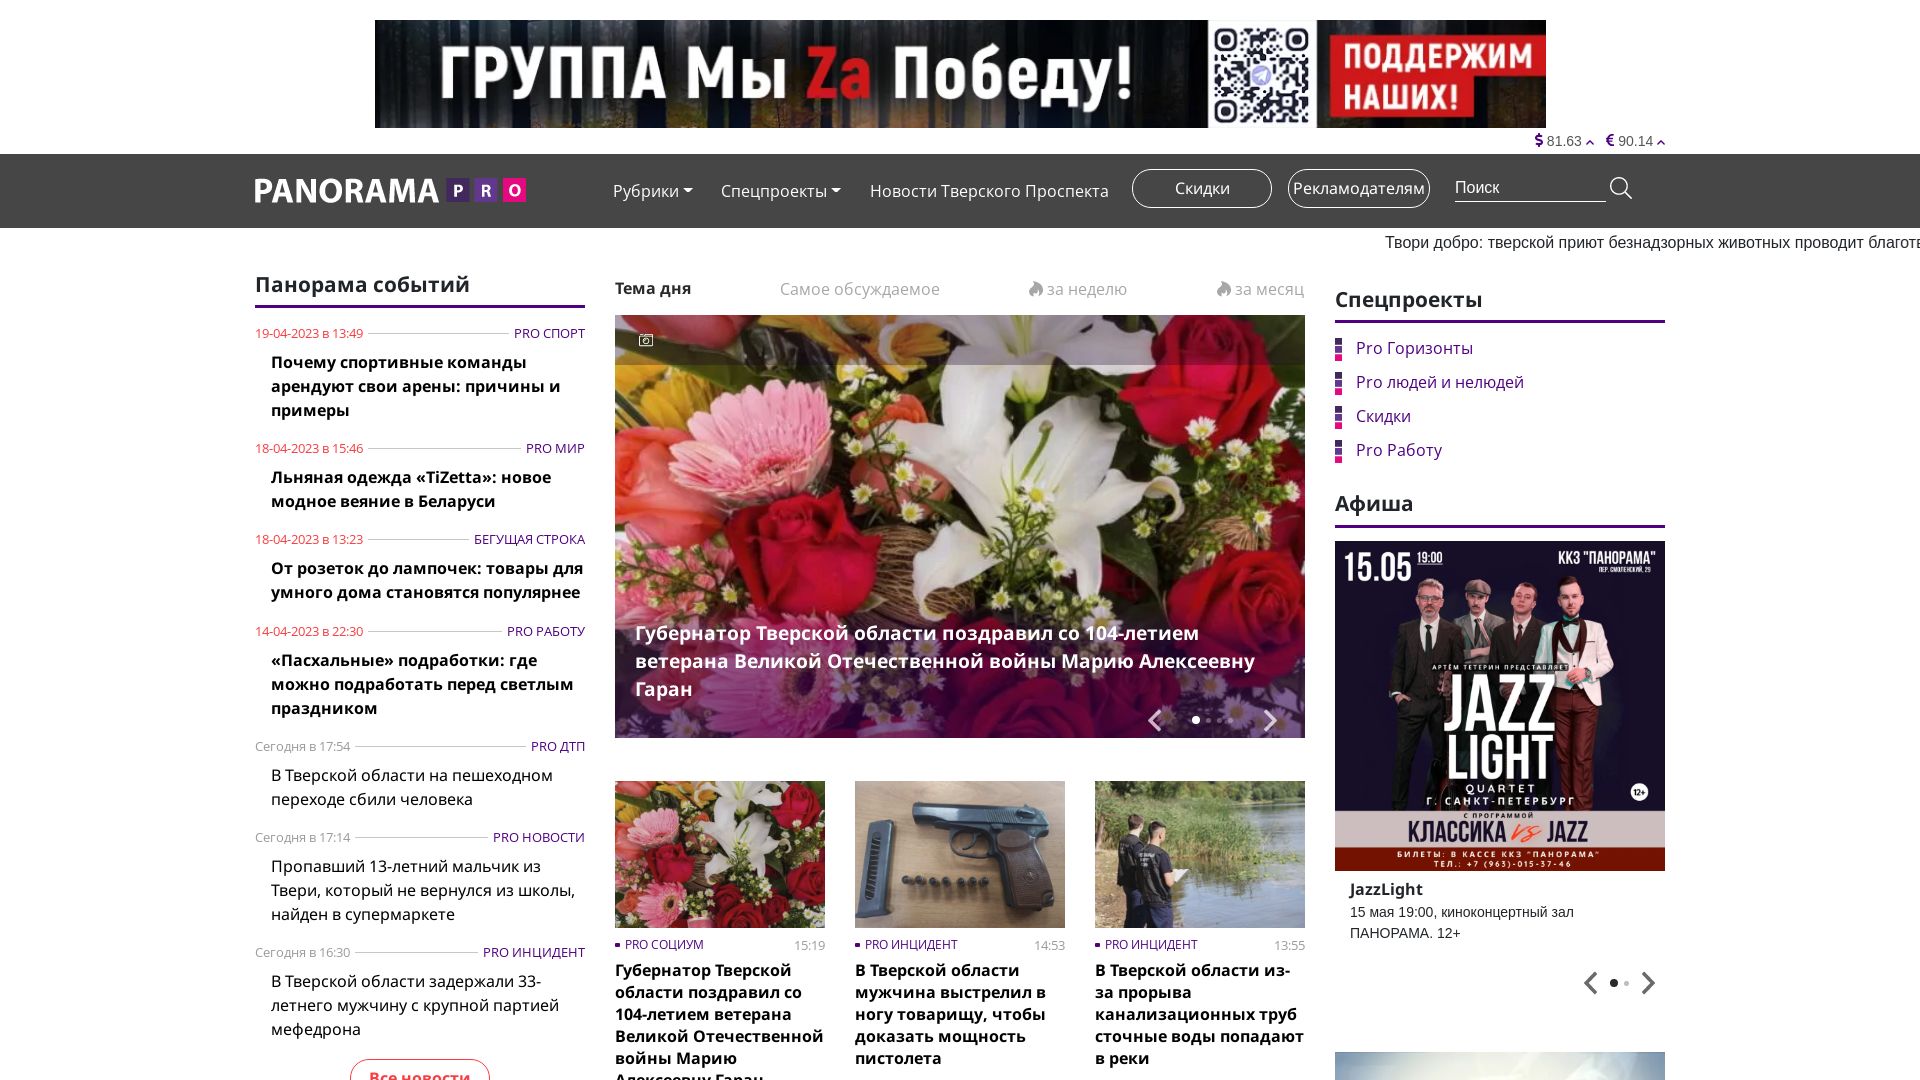 Website status panoramapro.ru is   ONLINE